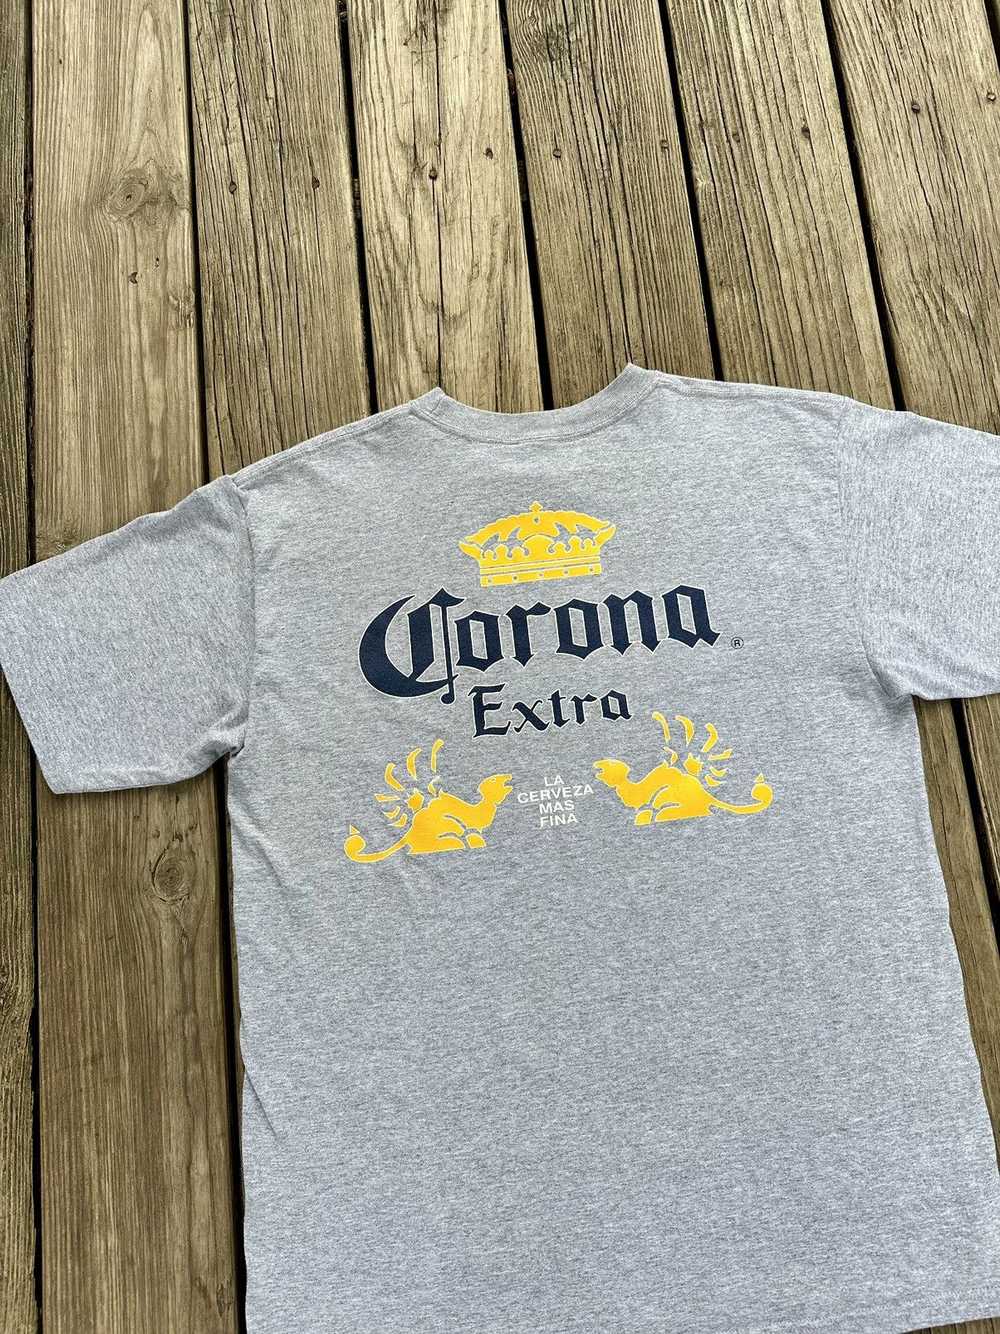 Corona Corona Extra Shirt - image 2